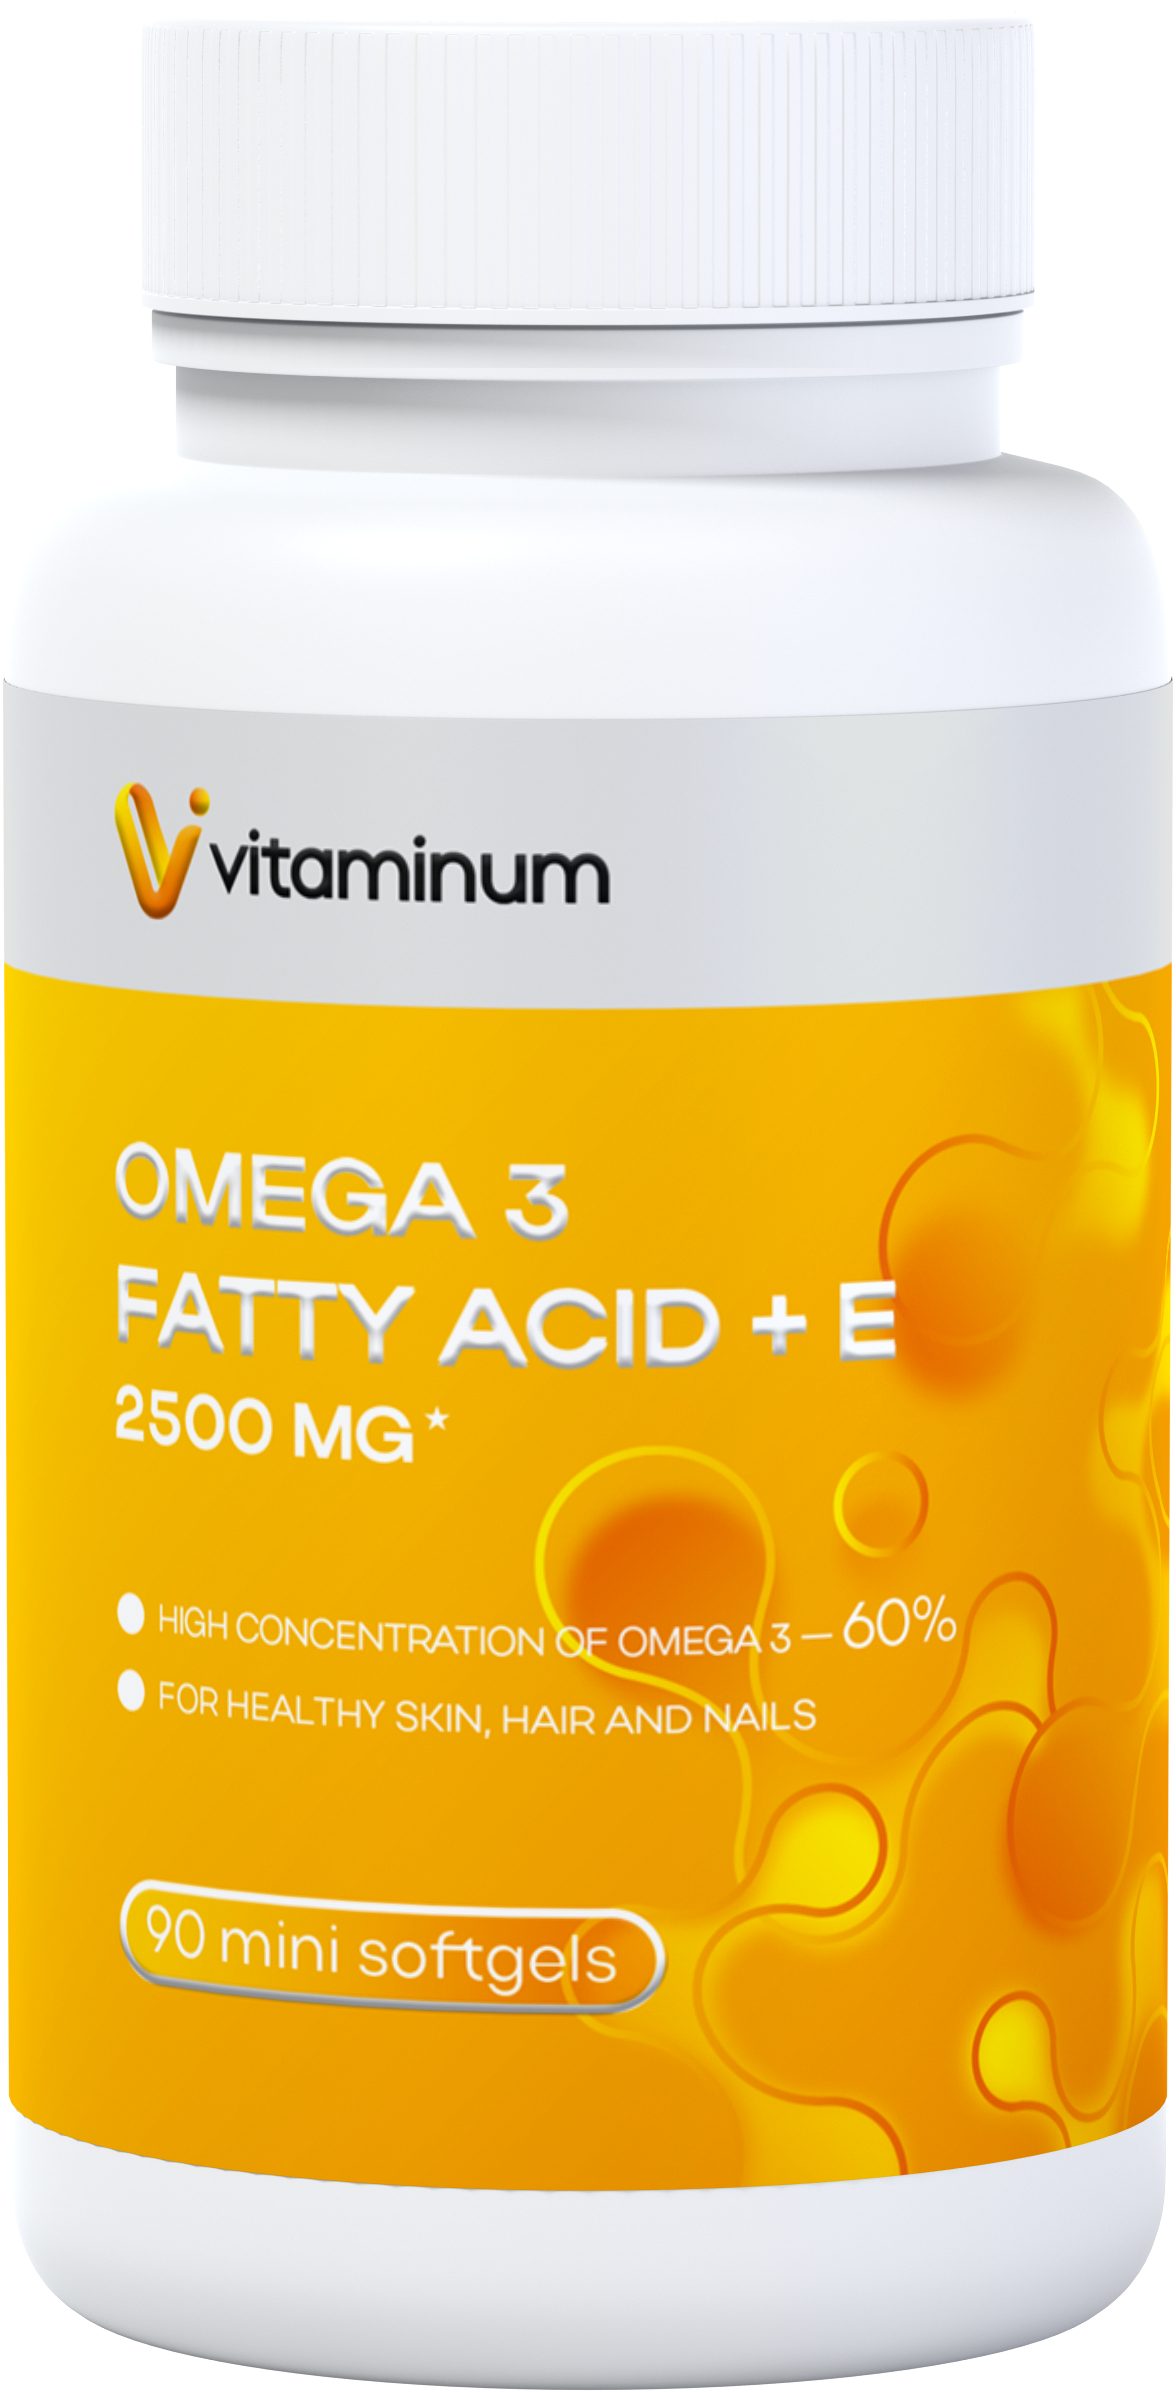  Vitaminum ОМЕГА 3 60% + витамин Е (2500 MG*) 90 капсул 700 мг   в Усинске